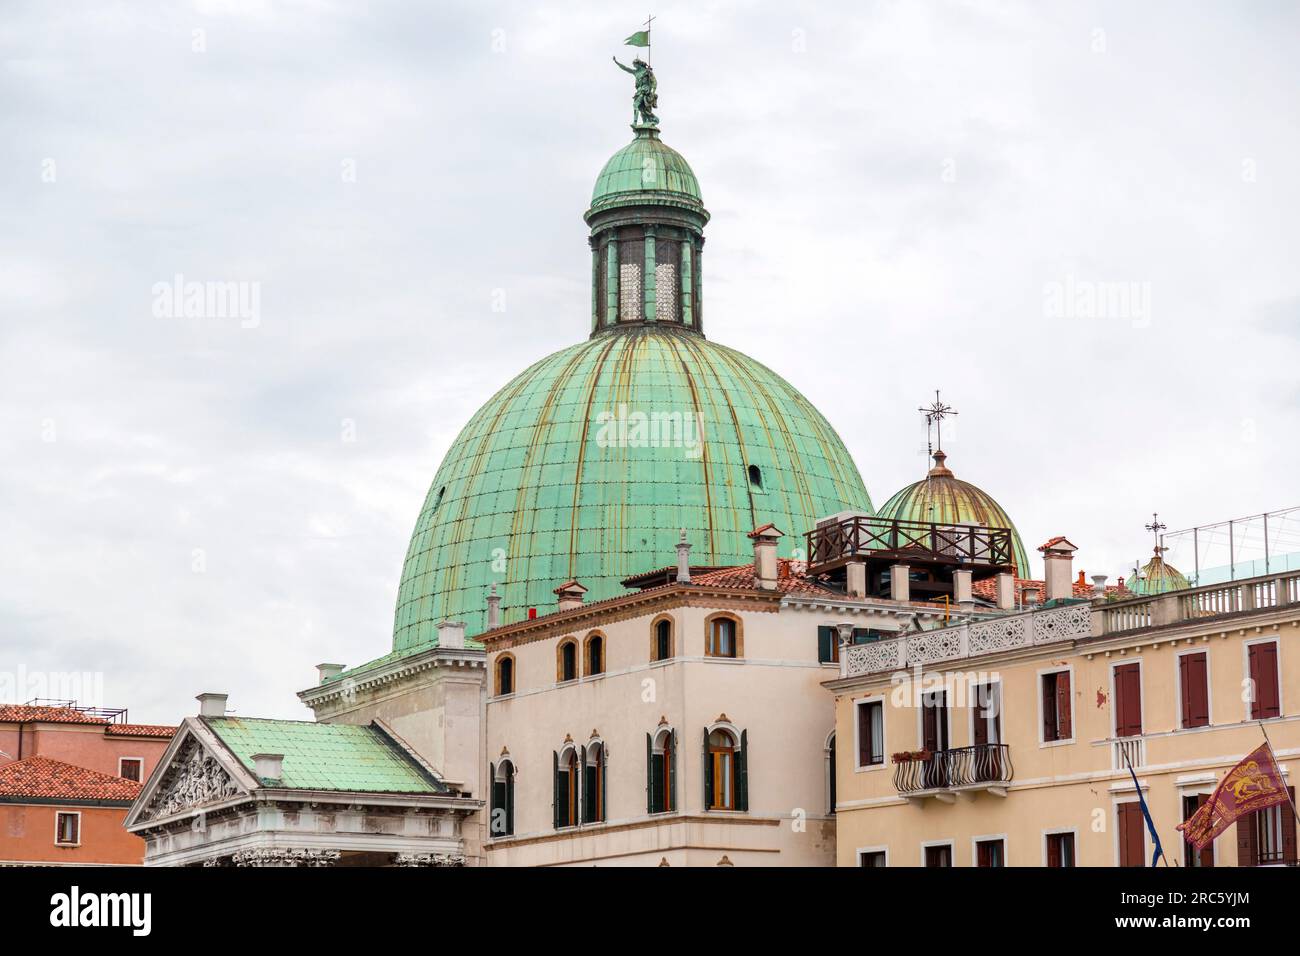 San Simeone piccolo, detta anche San Simeone e Giuda, è una chiesa nel sestiere di Santa Croce a Venezia, in Veneto Foto Stock